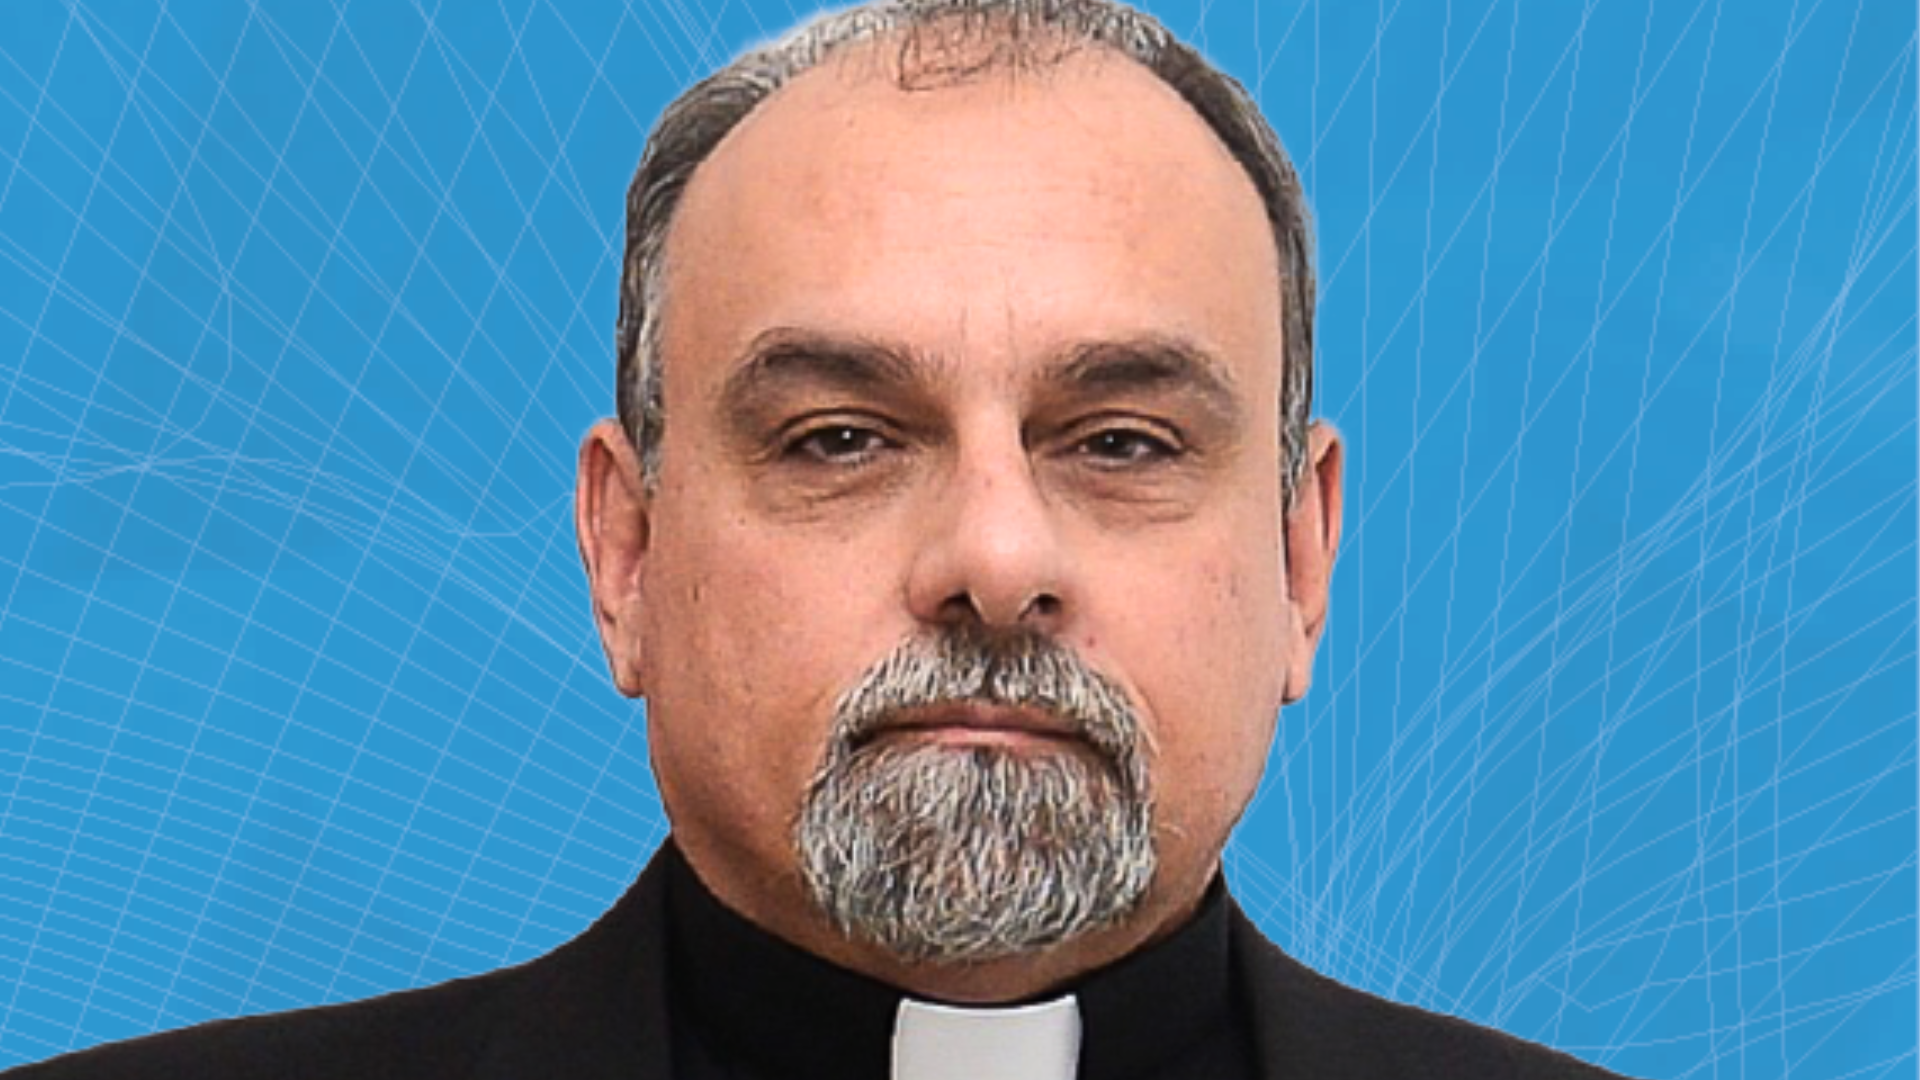 Novo Bispo Diocesano de Barra do Garças, Dom Paulo Renato, é